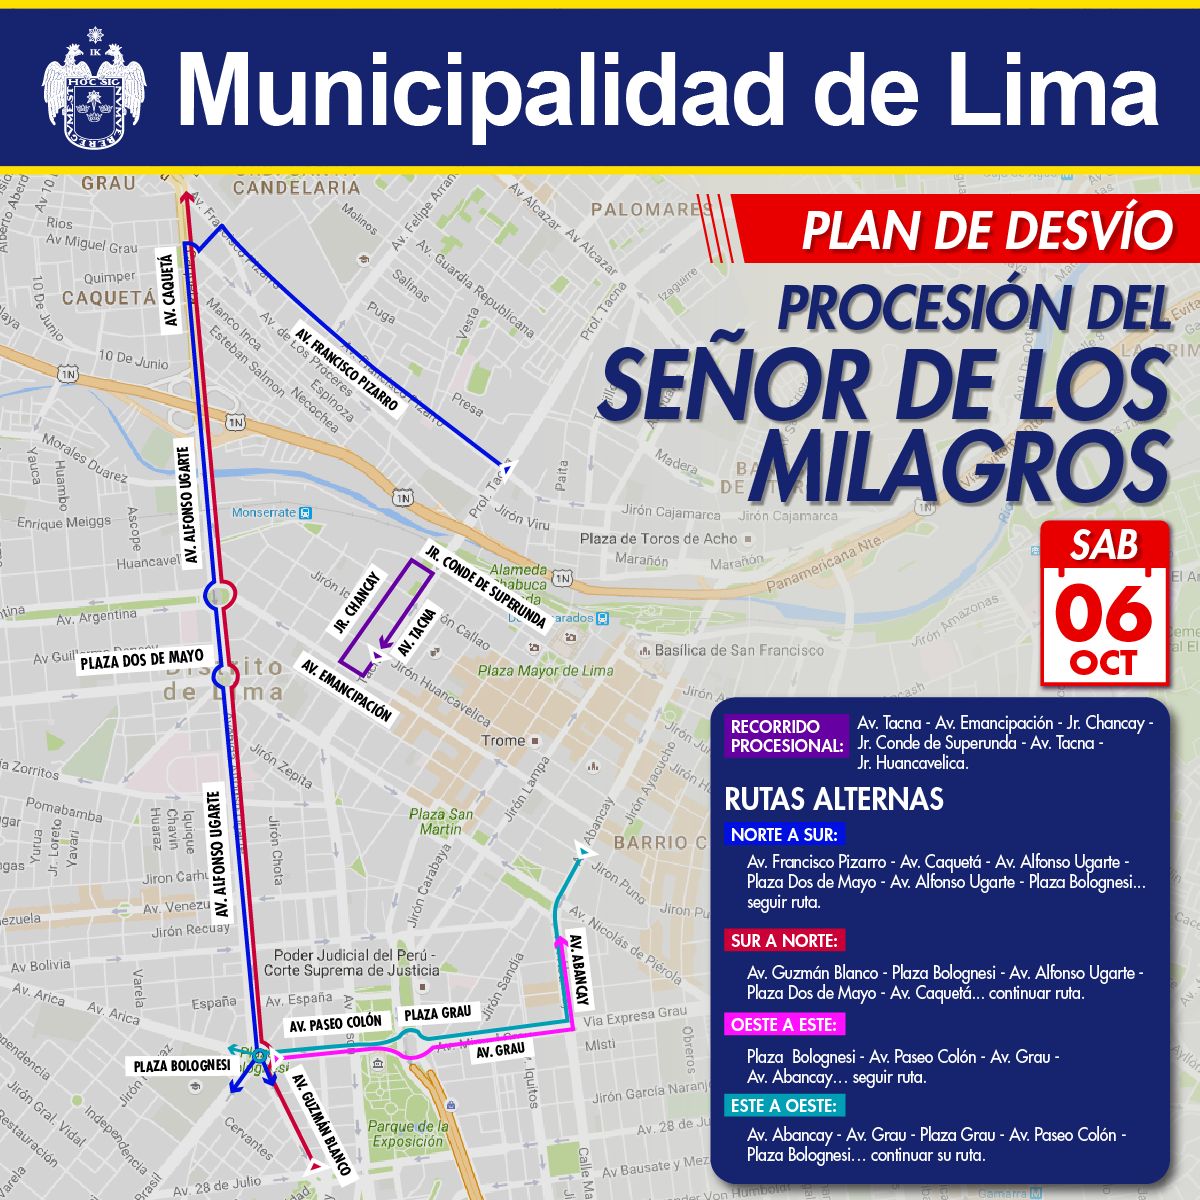 La comuna capitalina detalló que el acceso vehicular se restringirá parcialmente en las calles del Centro de Lima. (Difusión)